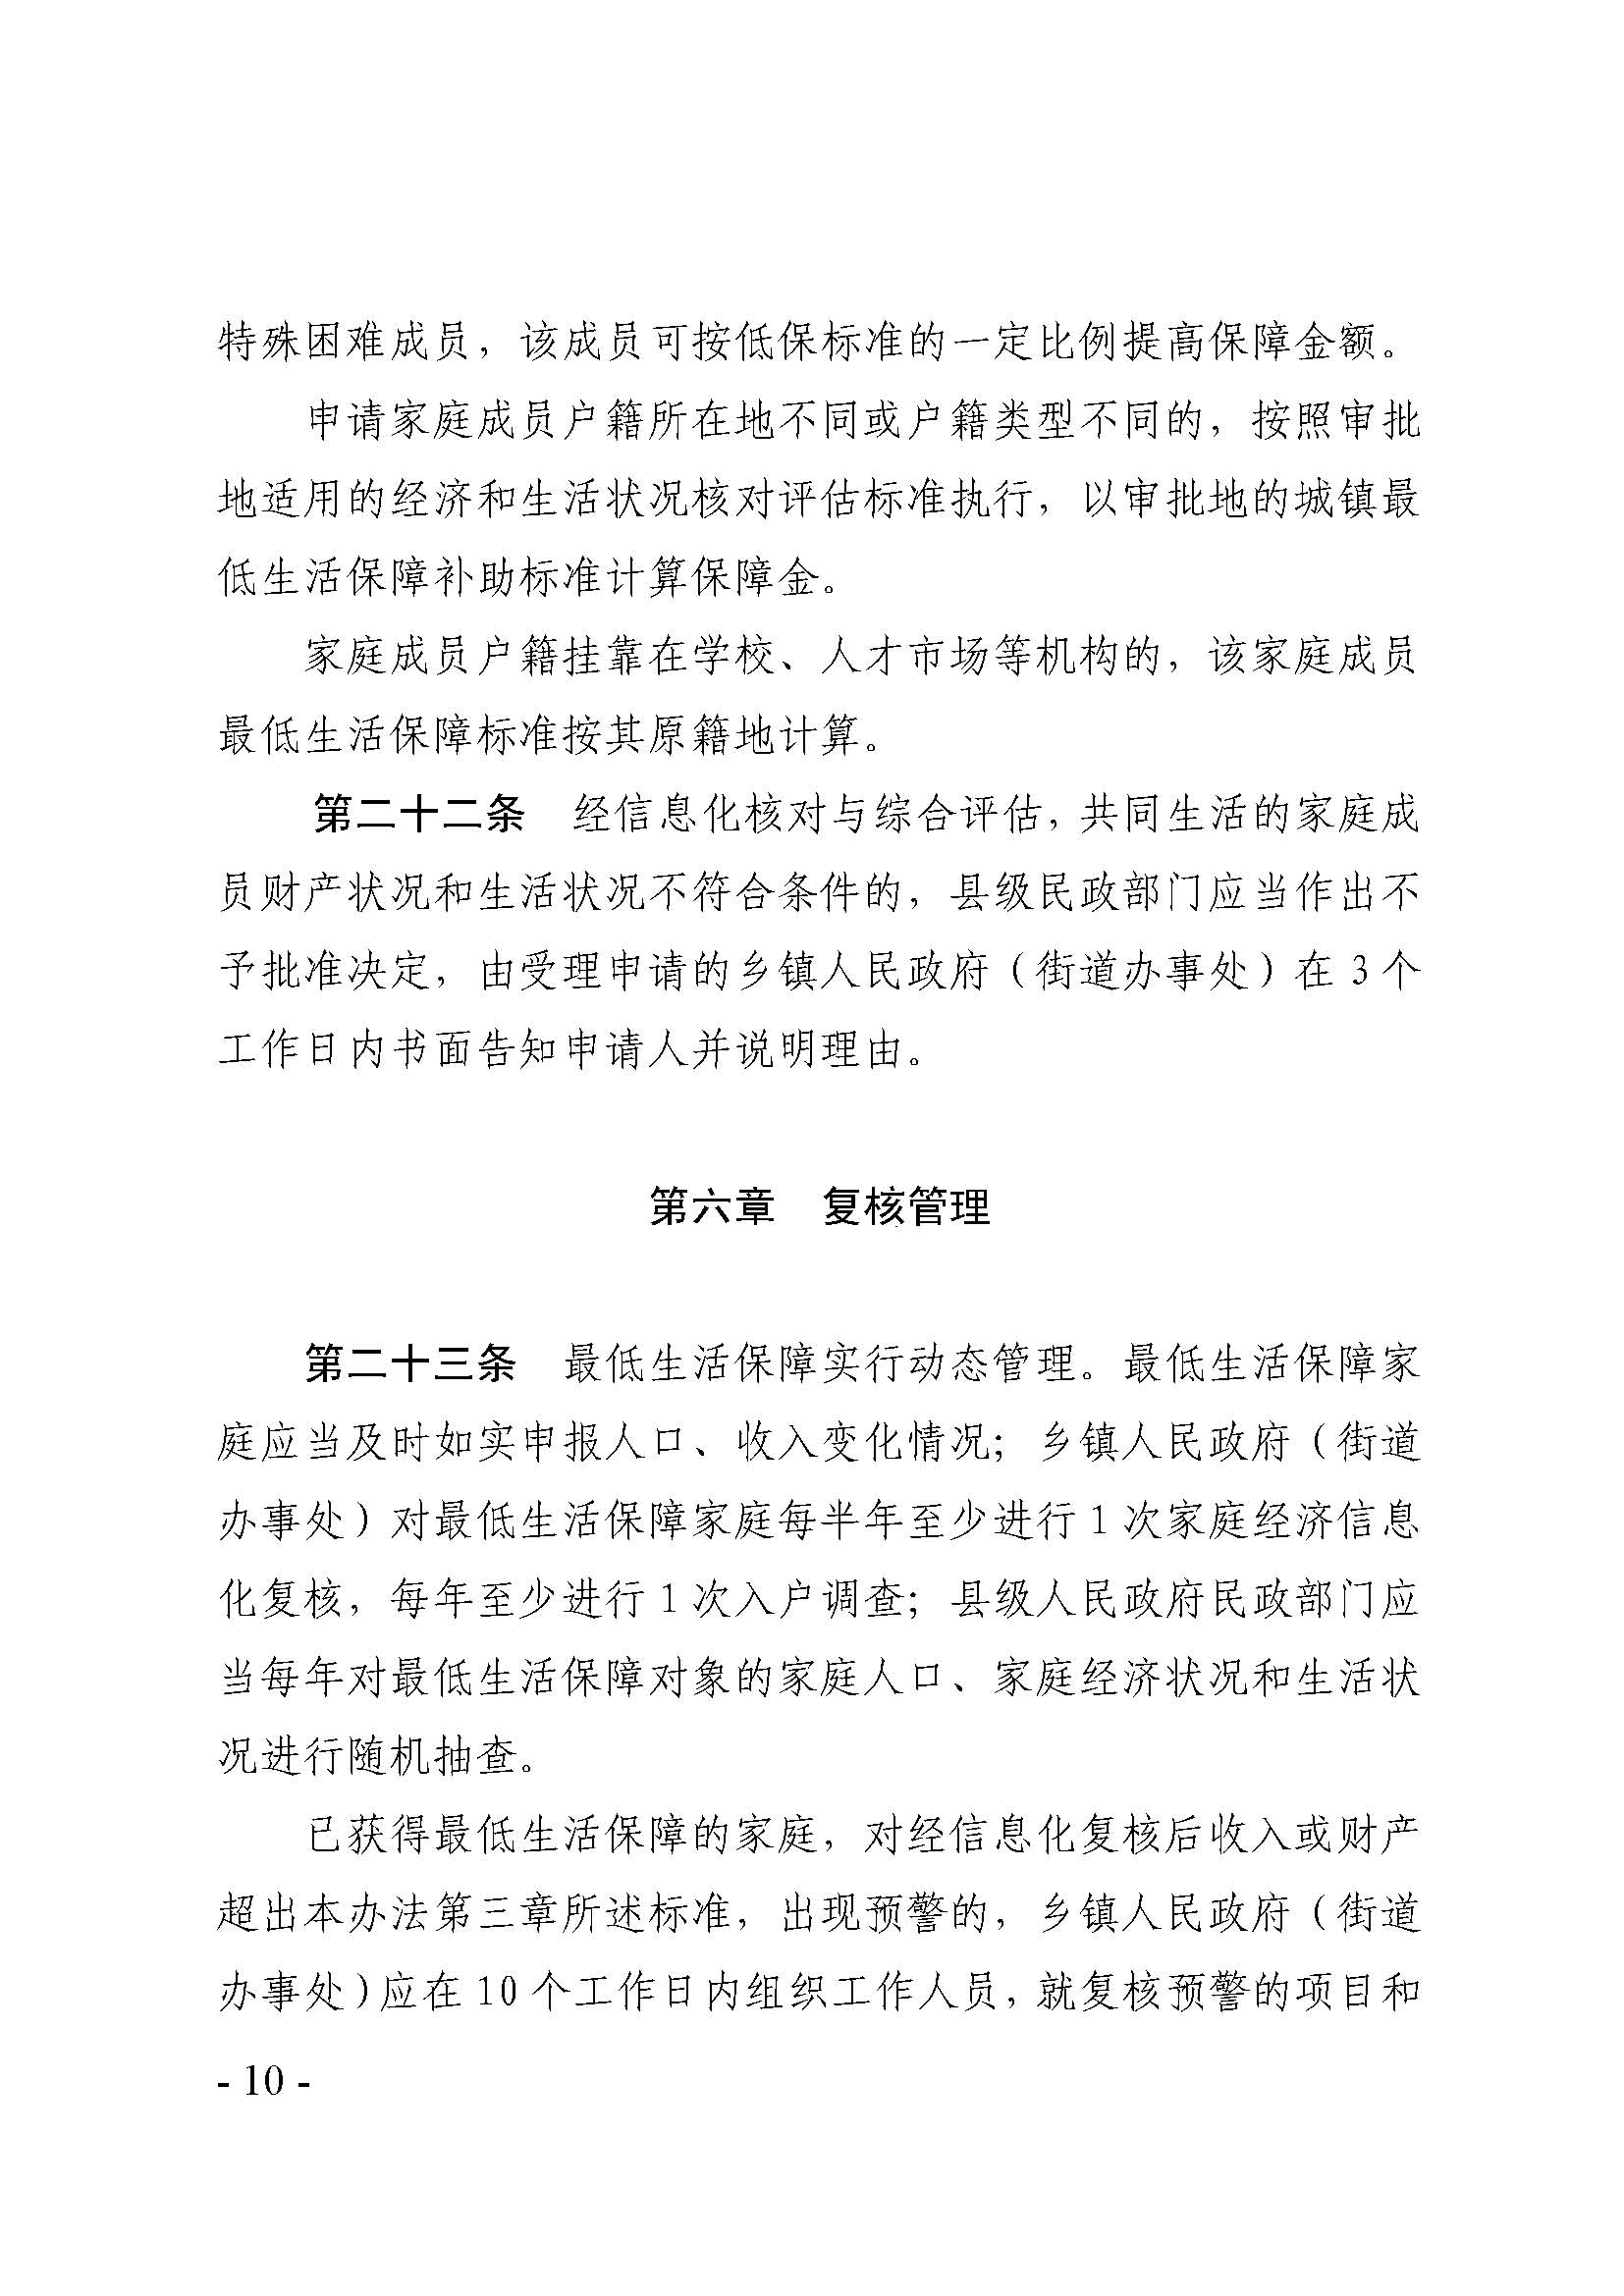 广东省最低生活保障家庭经济状况核对和生活状况评估认定办法_页面_10.jpg